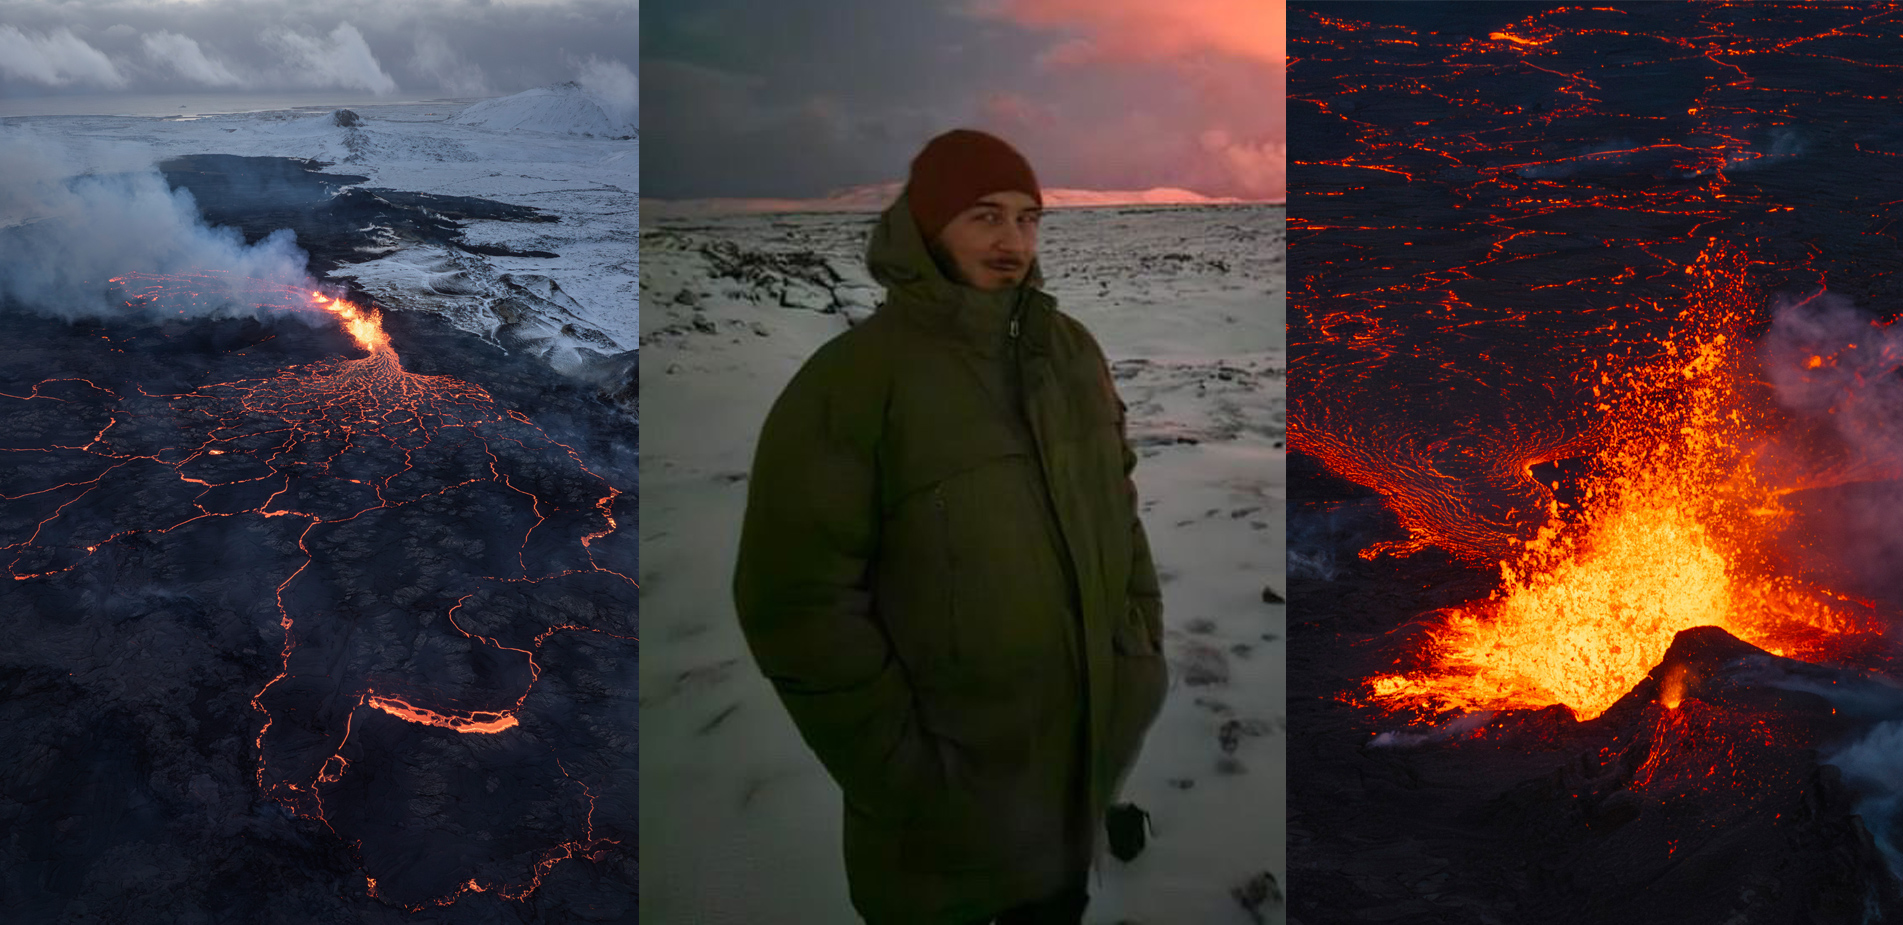 Έλληνας κάτοικος της Ισλανδίας μιλάει στο Newsbeast για την έκρηξη του ηφαιστείου: Η λάβα έφτανε τα 150 μέτρα ύψος